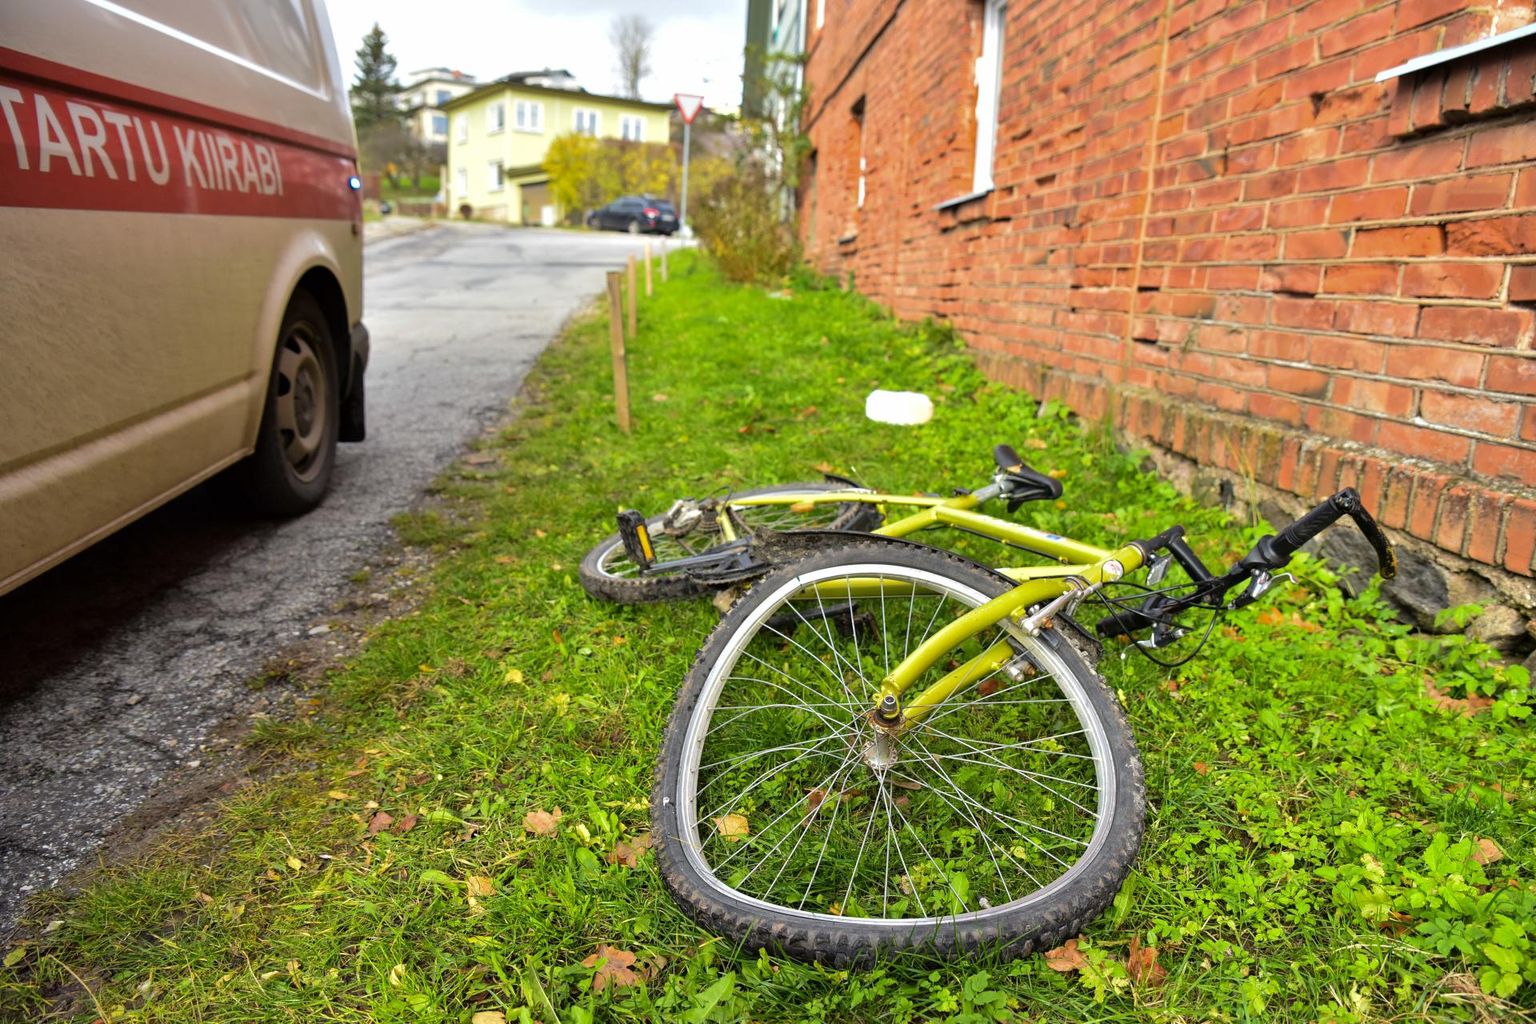 58-aastane naine kaotas jalgratta üle kontrolli ja kukkus. Jalgrattur toimetati Rakvere haiglasse. Foto on illustratiivne.